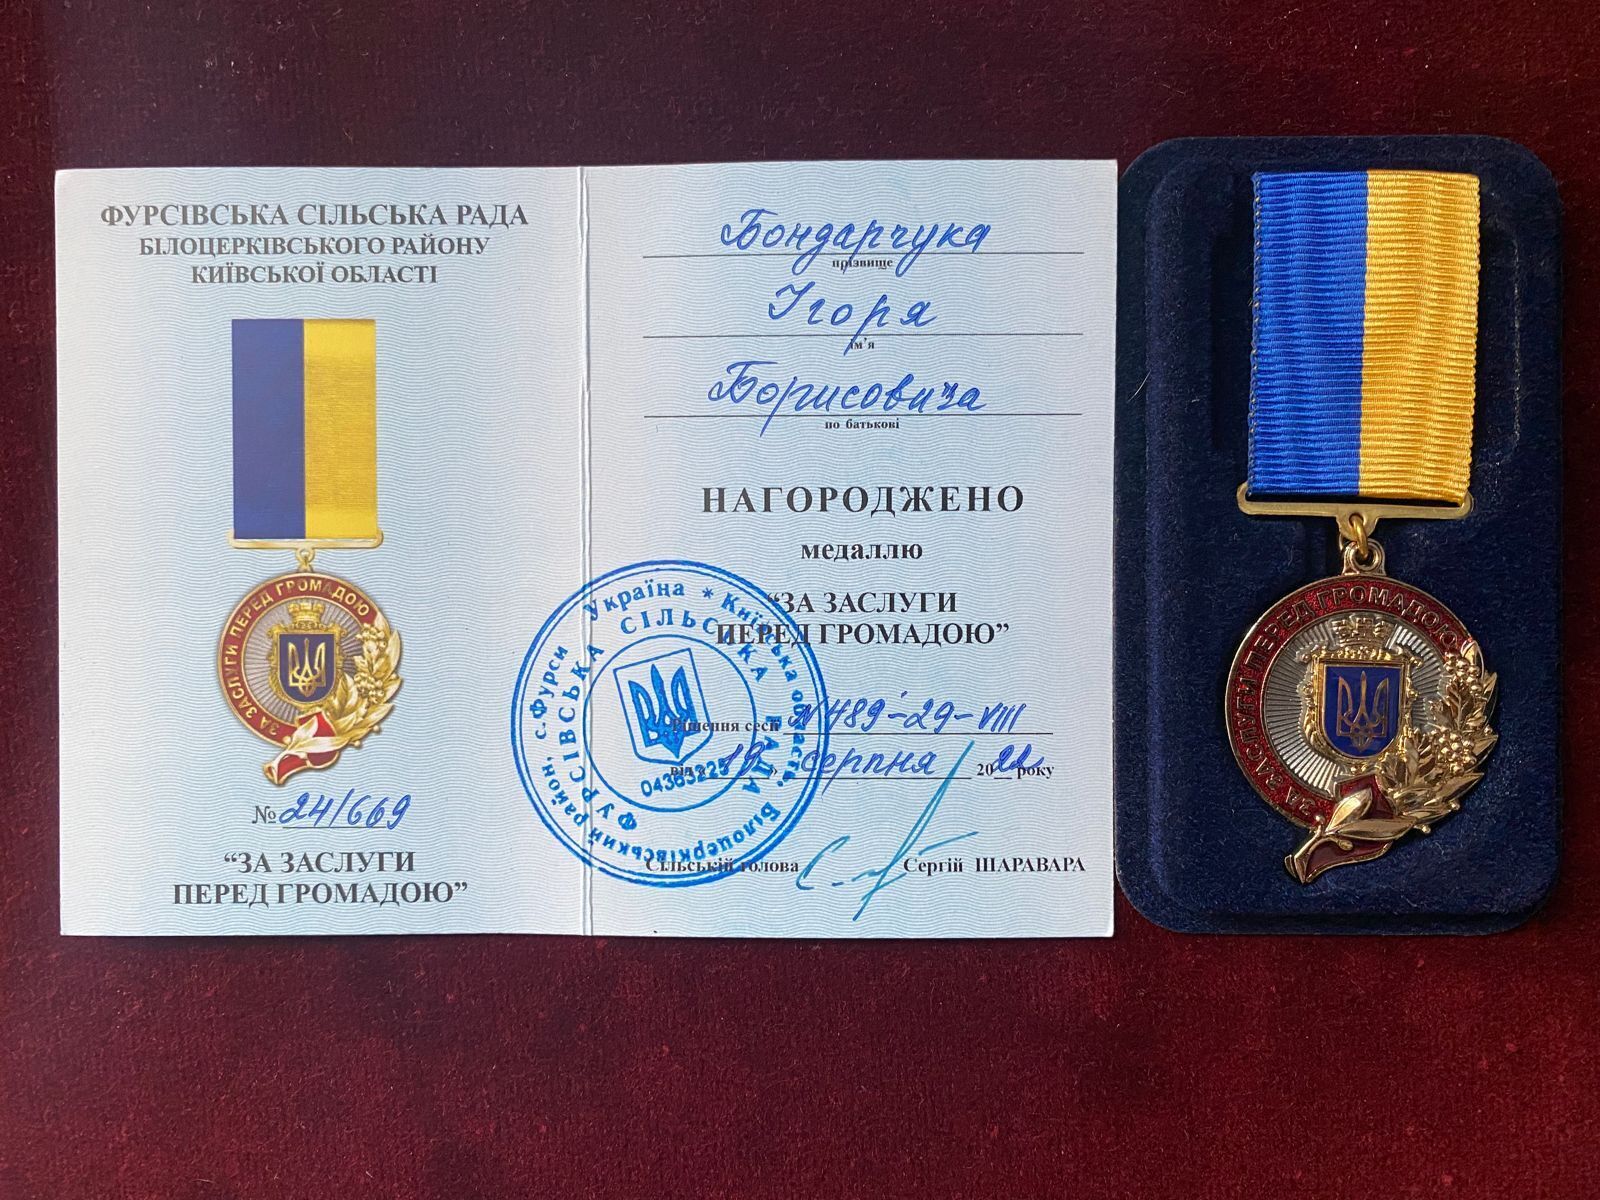 Медаллю був відзначений представник БФ ''волонтер'' Ігор Бондарчук